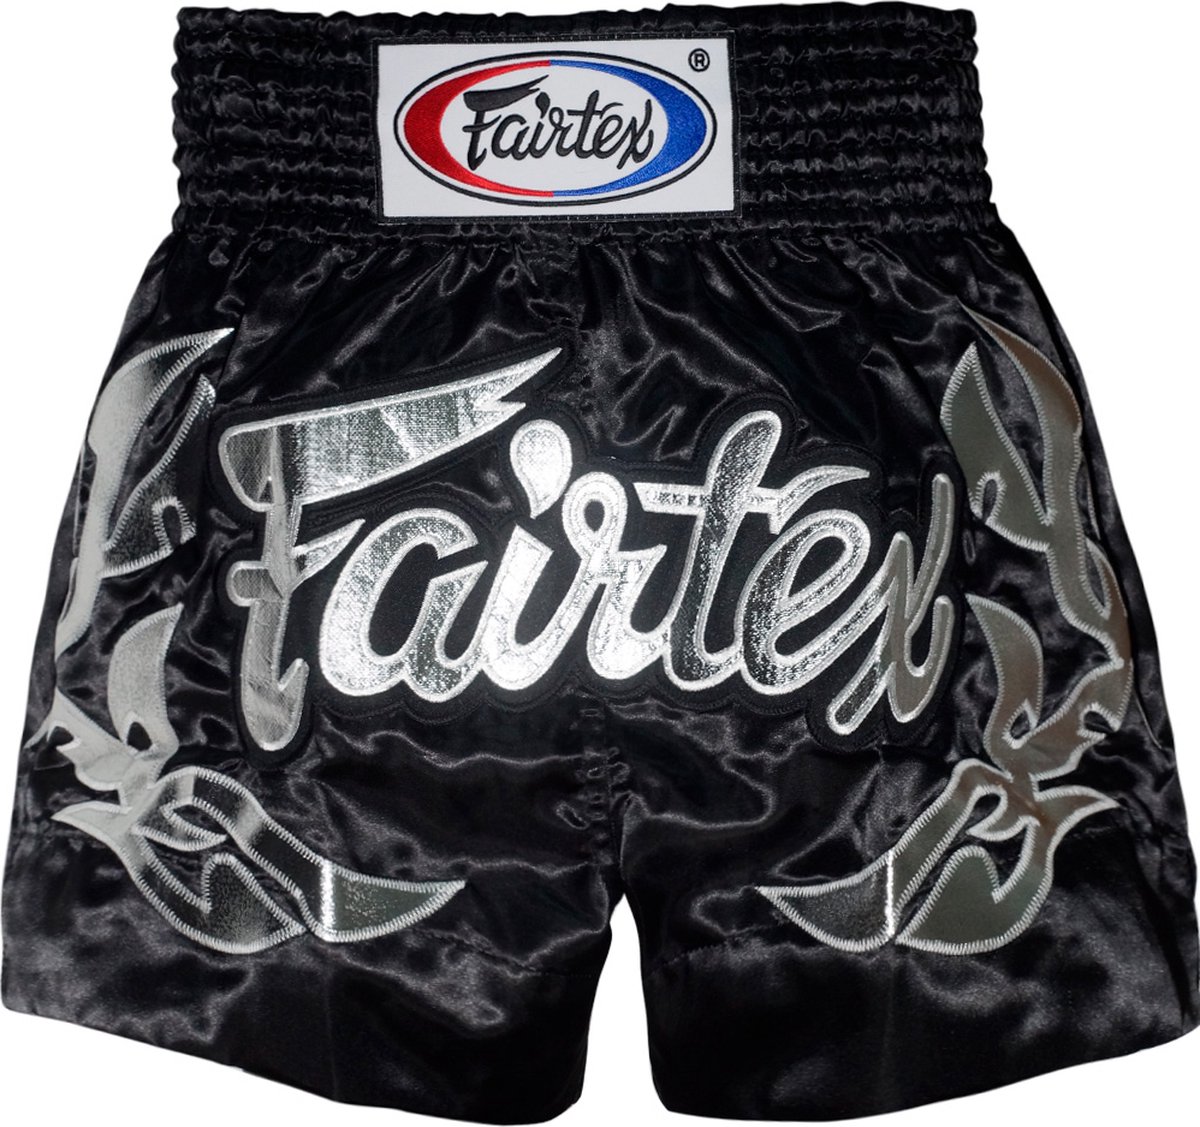 Fairtex Muay Thai Shorts - Eternal Silver - zwart/zilver - maat M